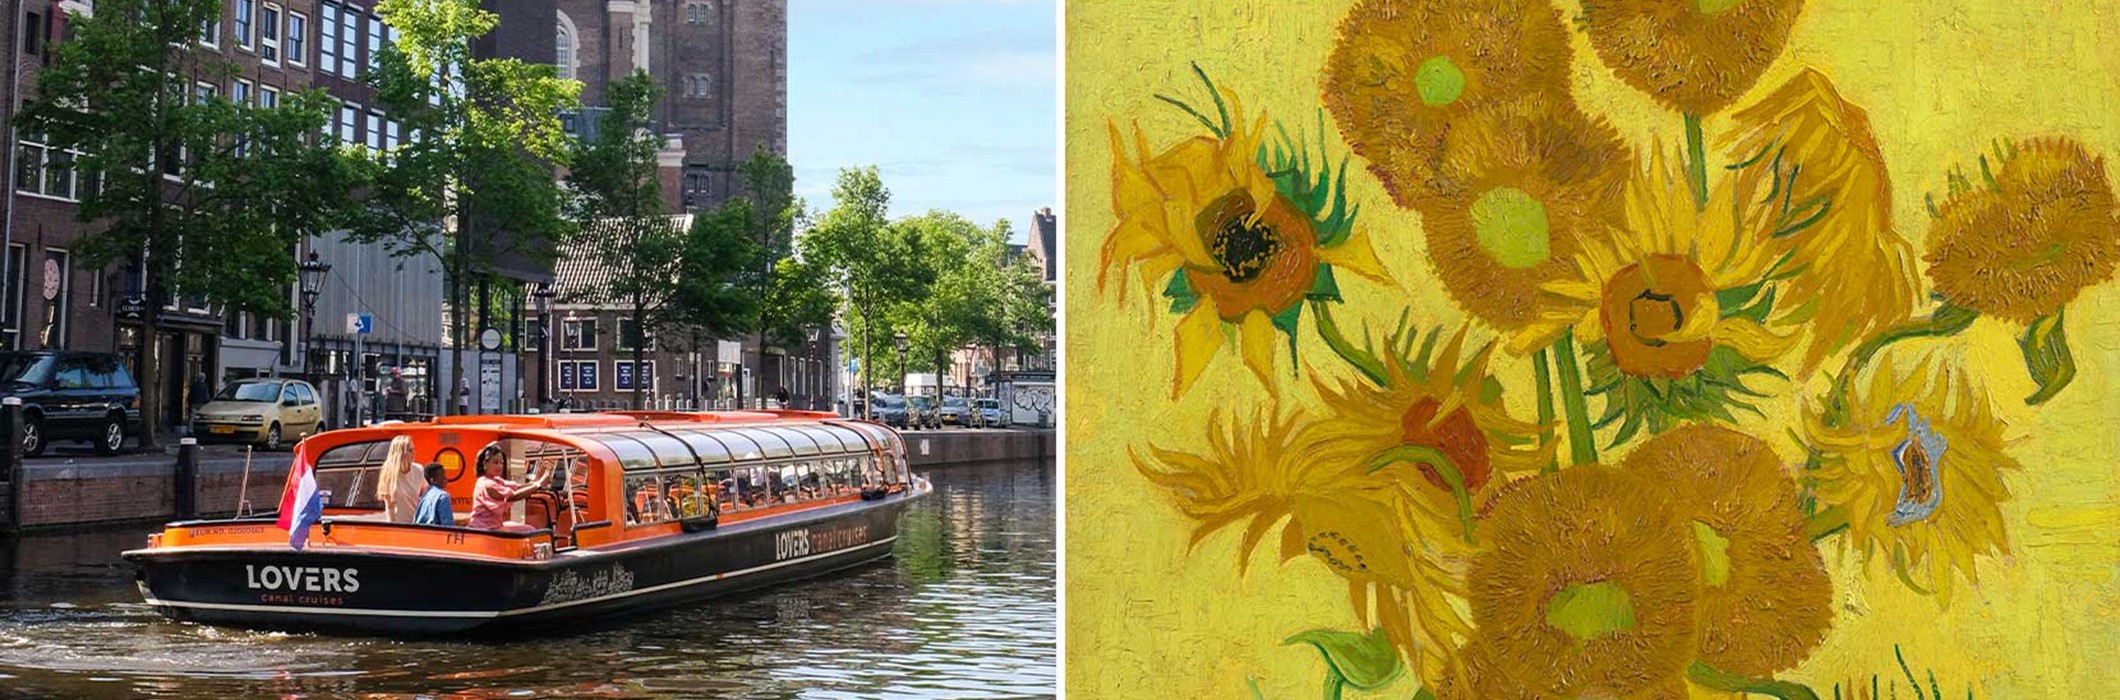 Van Gogh Museum + Grachtenrundfahrt Amsterdam